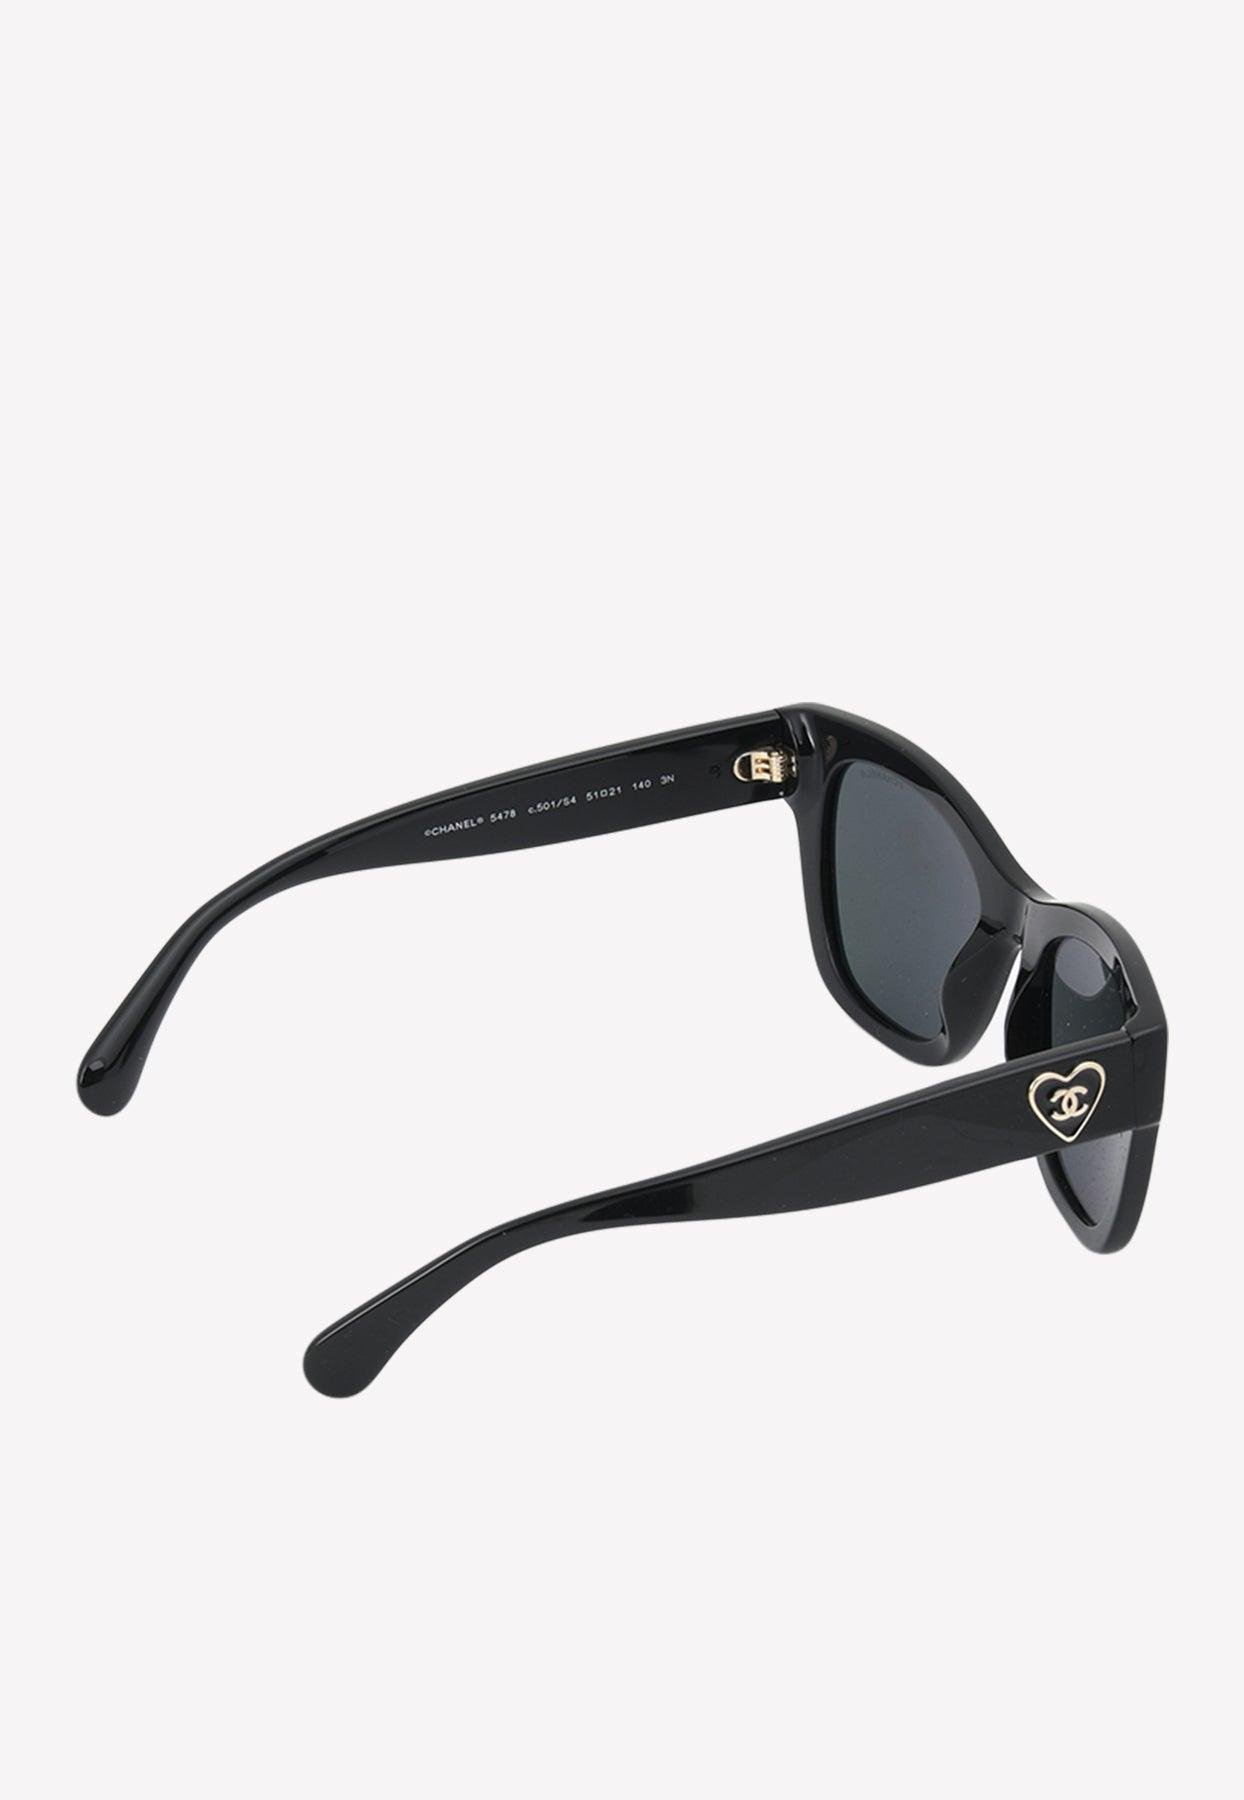 Chanel Women's 5478 Square Sunglasses